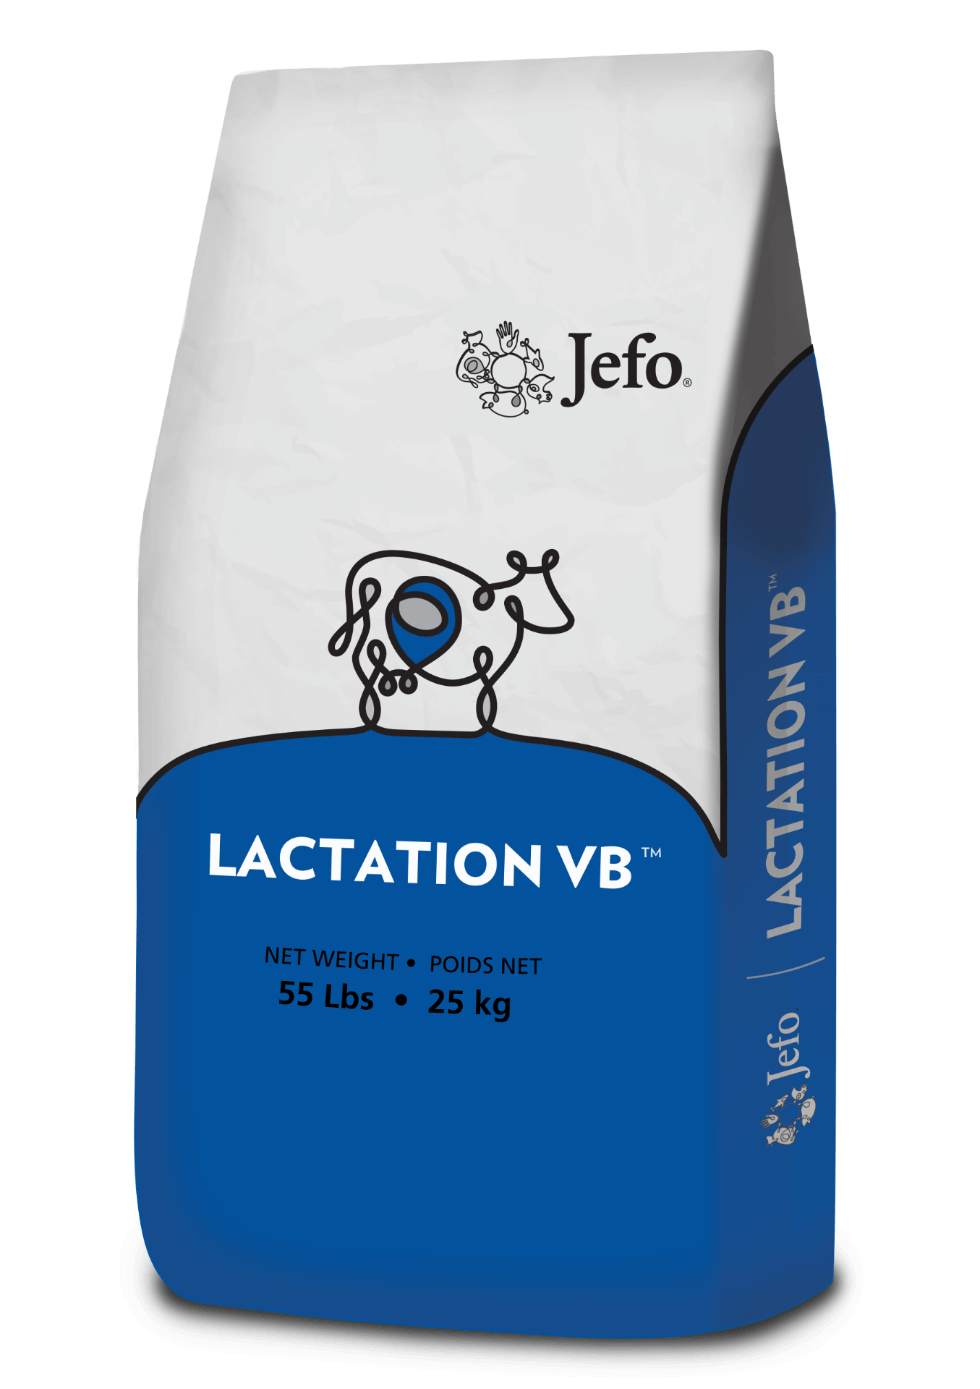 Lactation VB